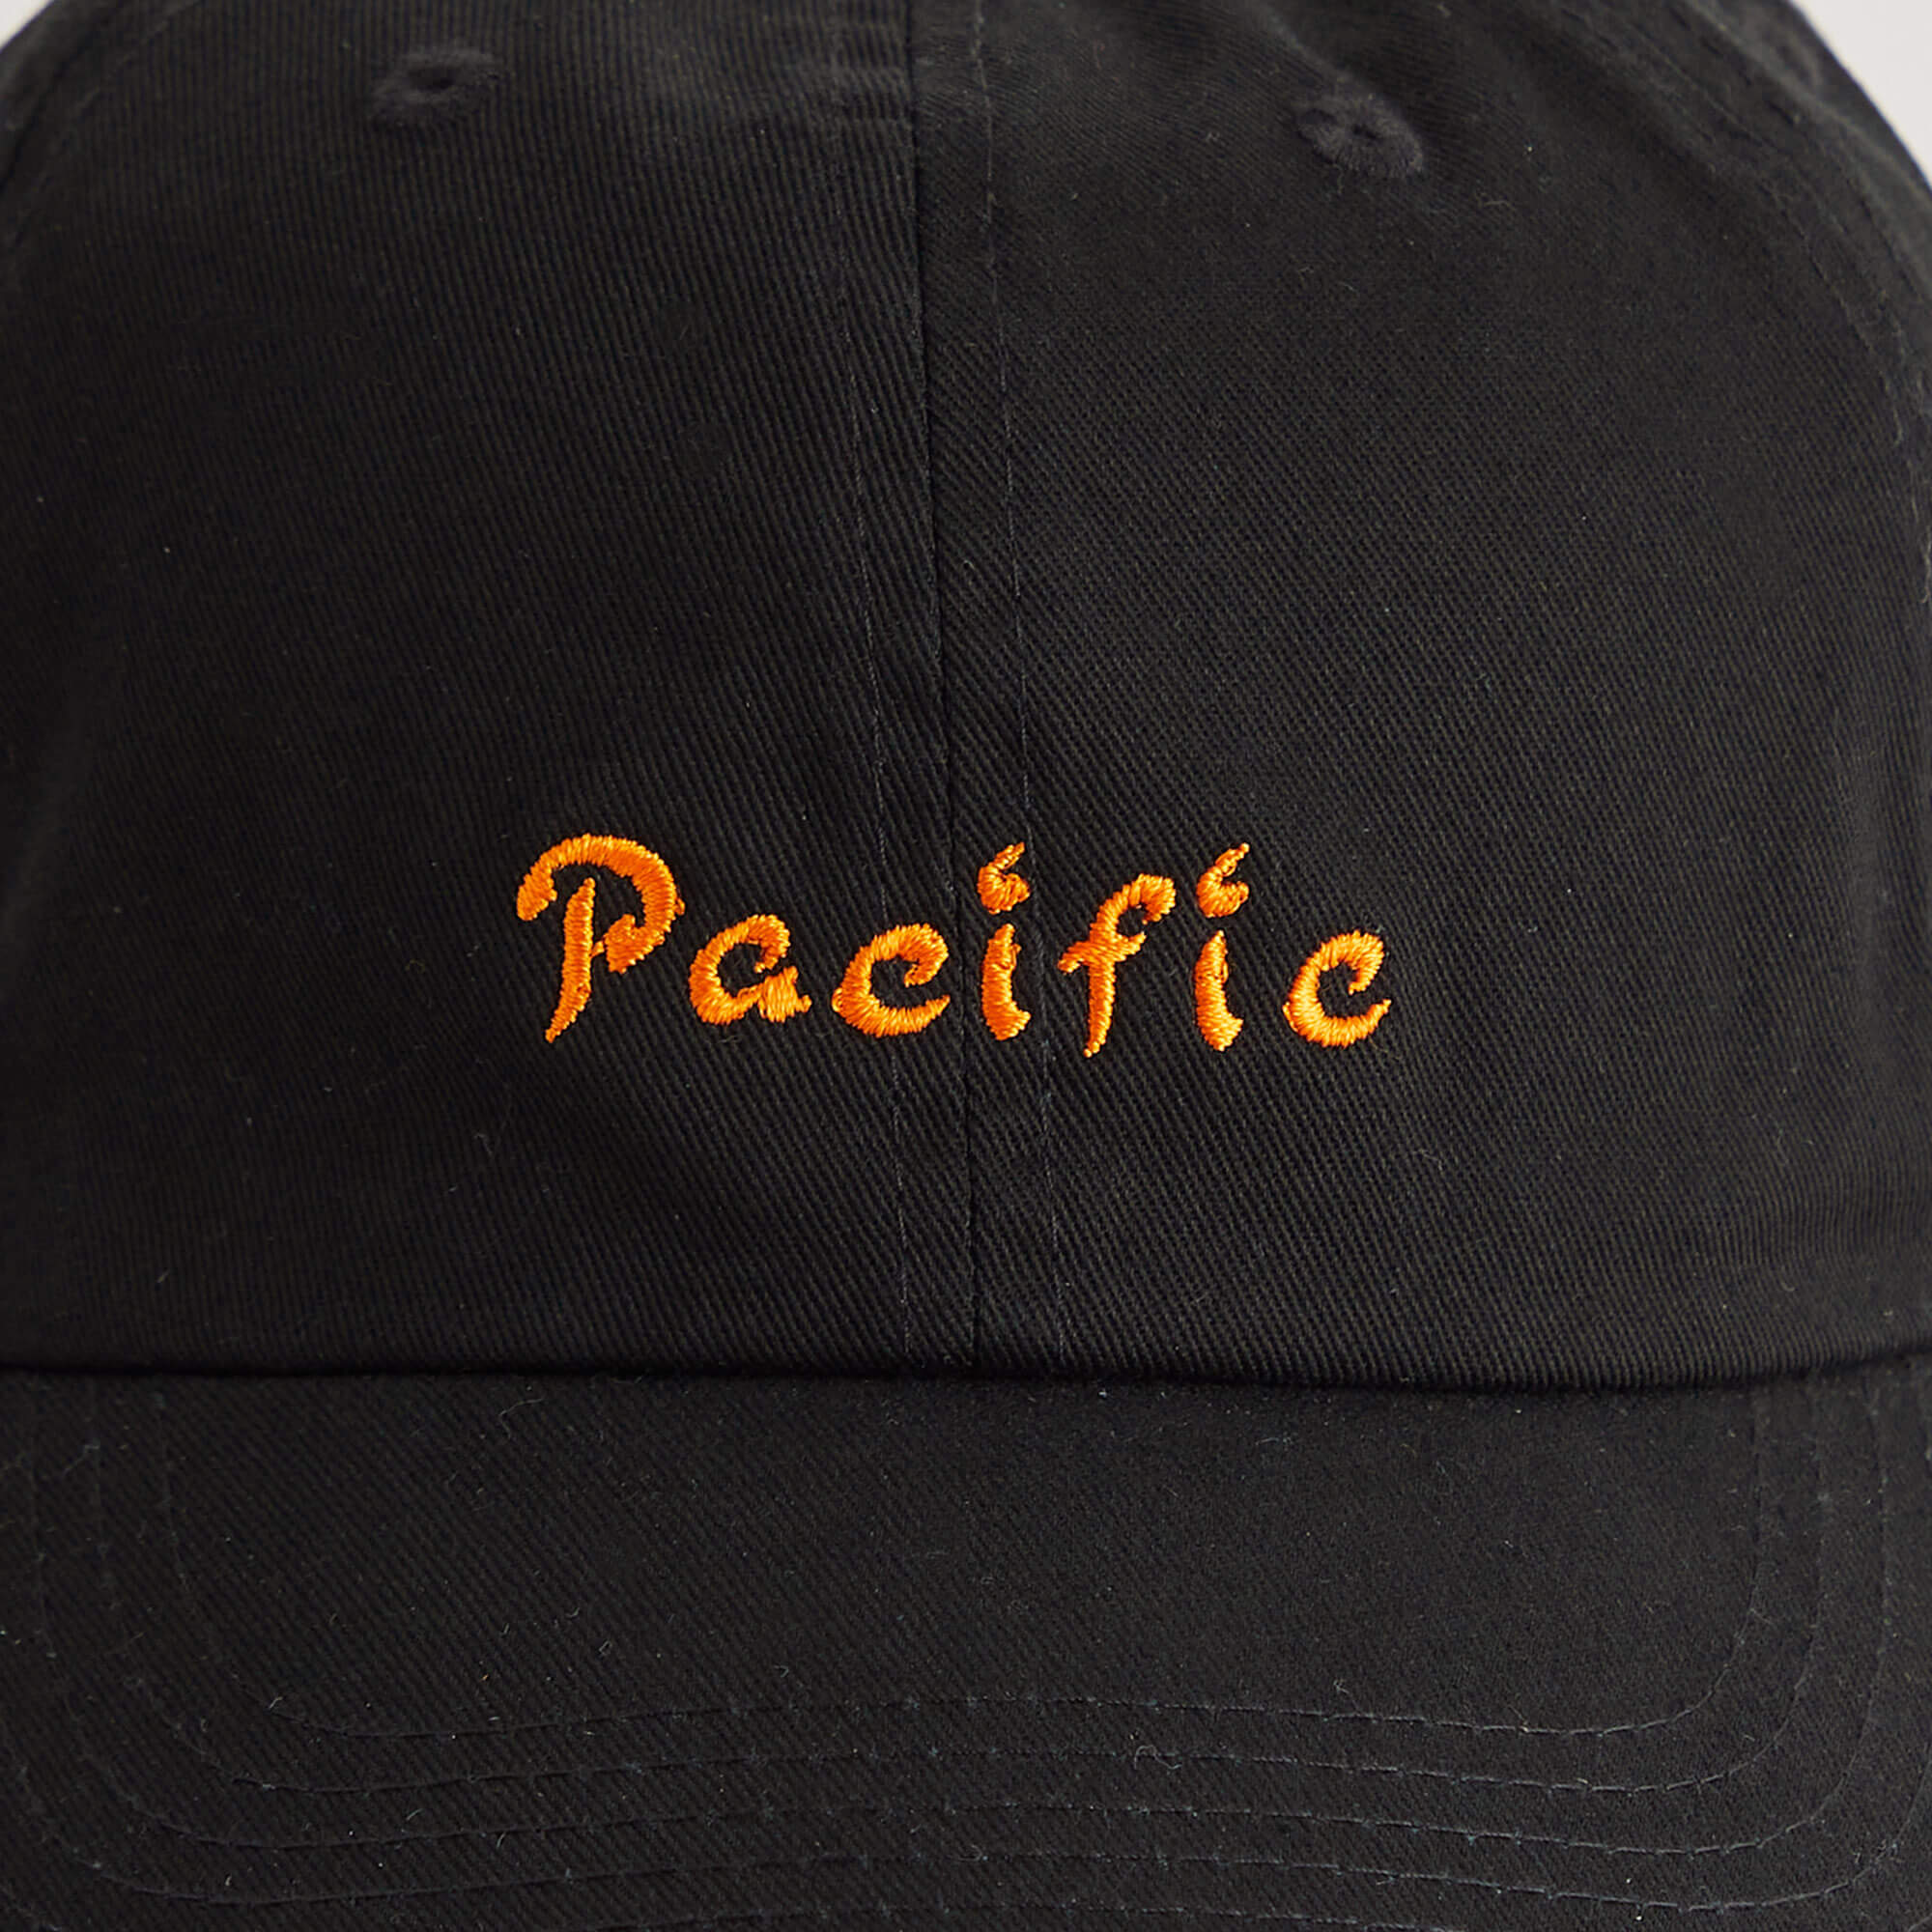 Pacific Cap